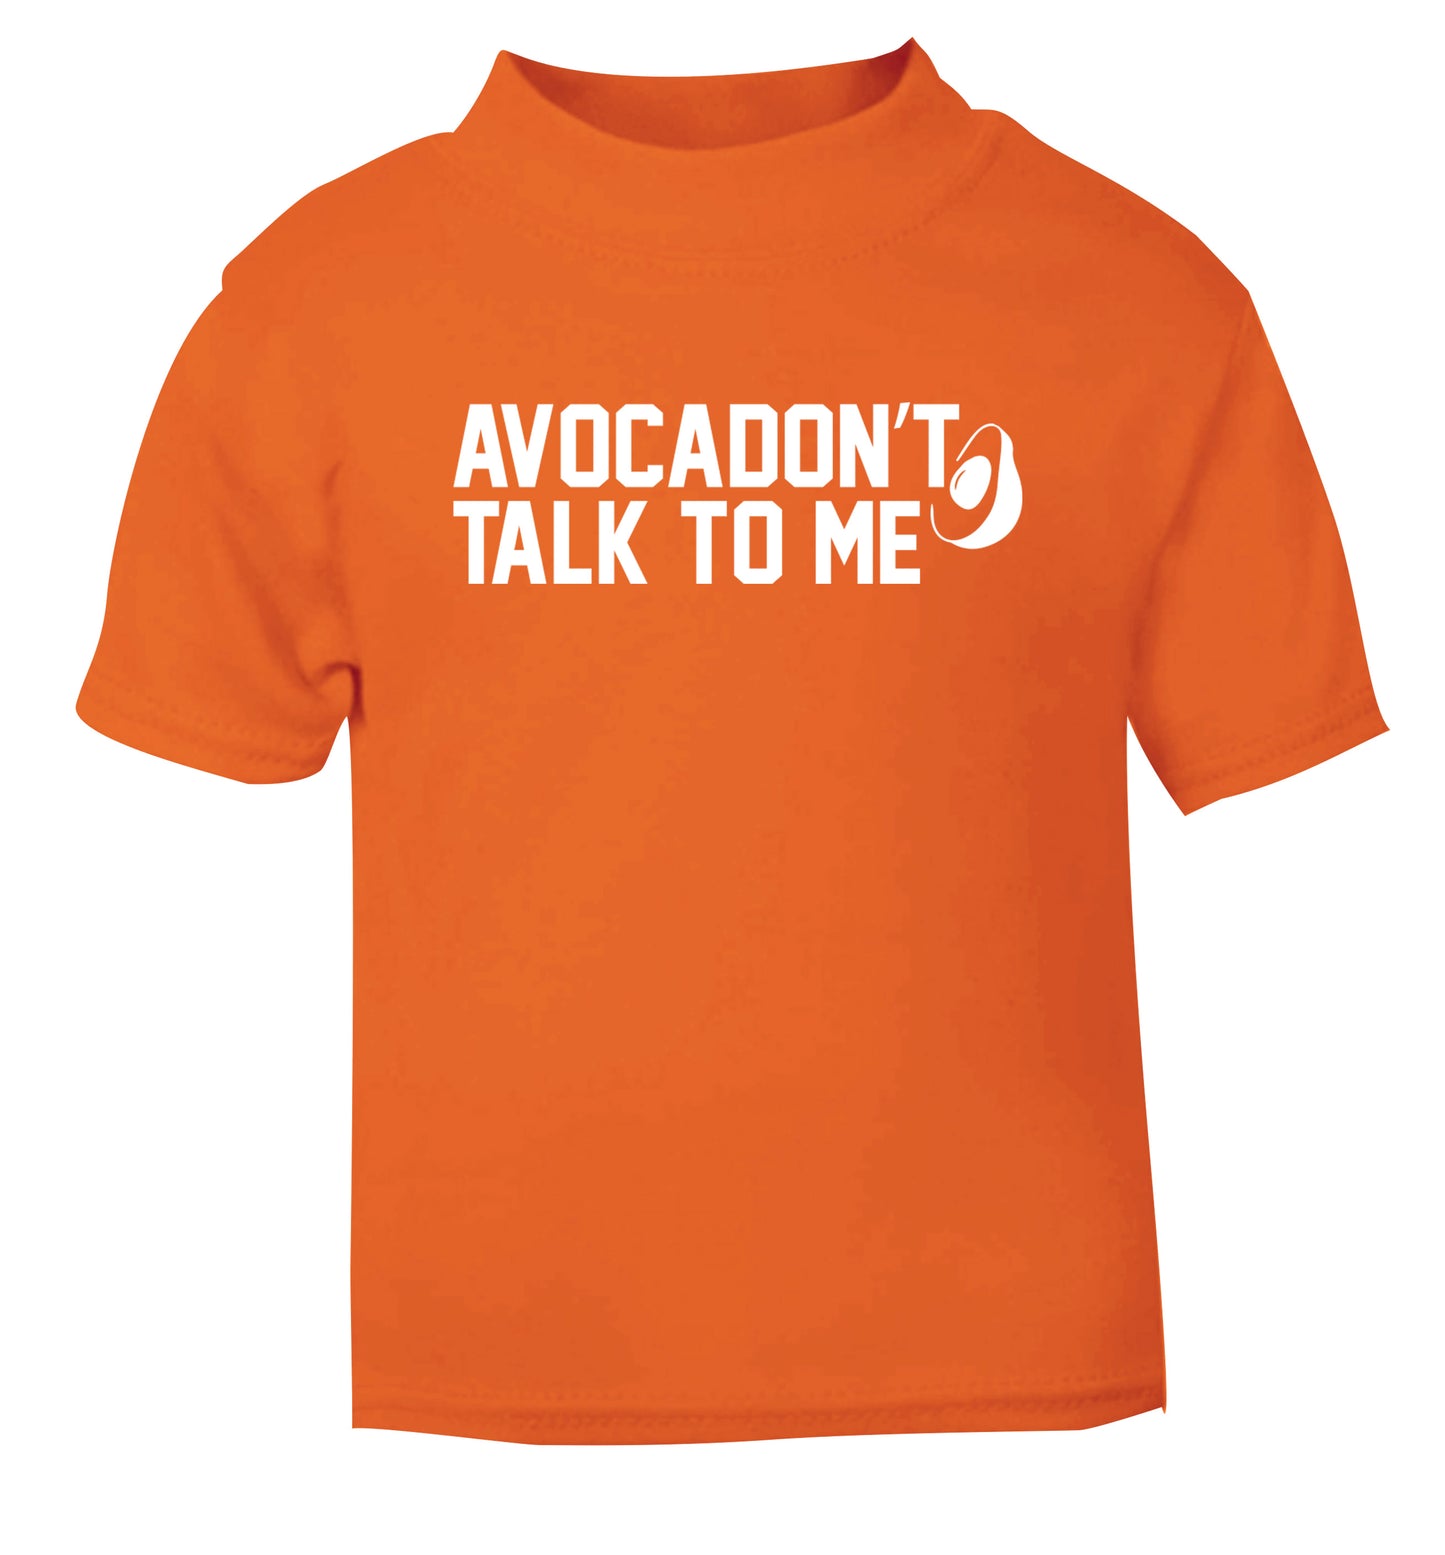 Avocadon't talk to me orange Baby Toddler Tshirt 2 Years